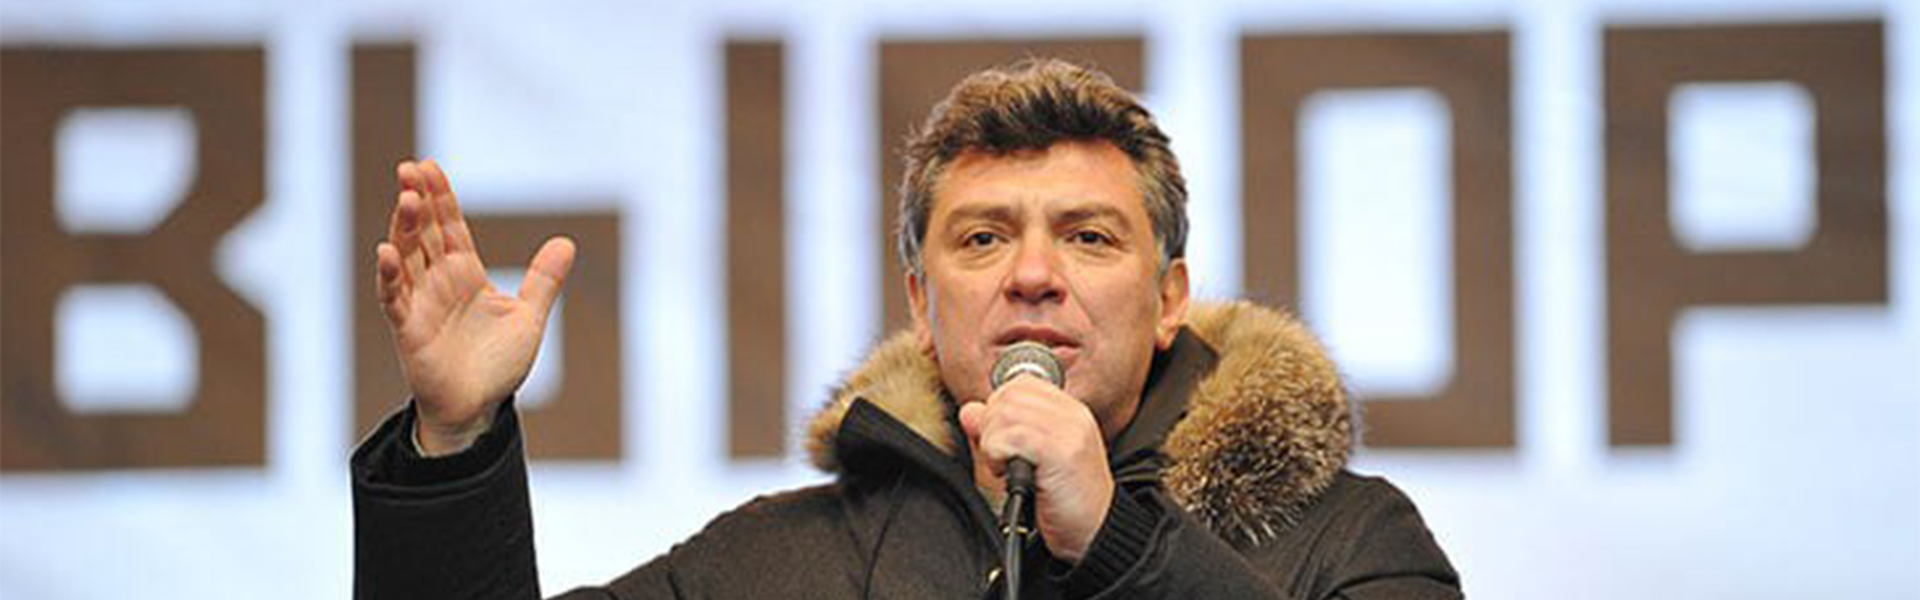 Борис был прав! Почему Немцова следует считать правым политиком.